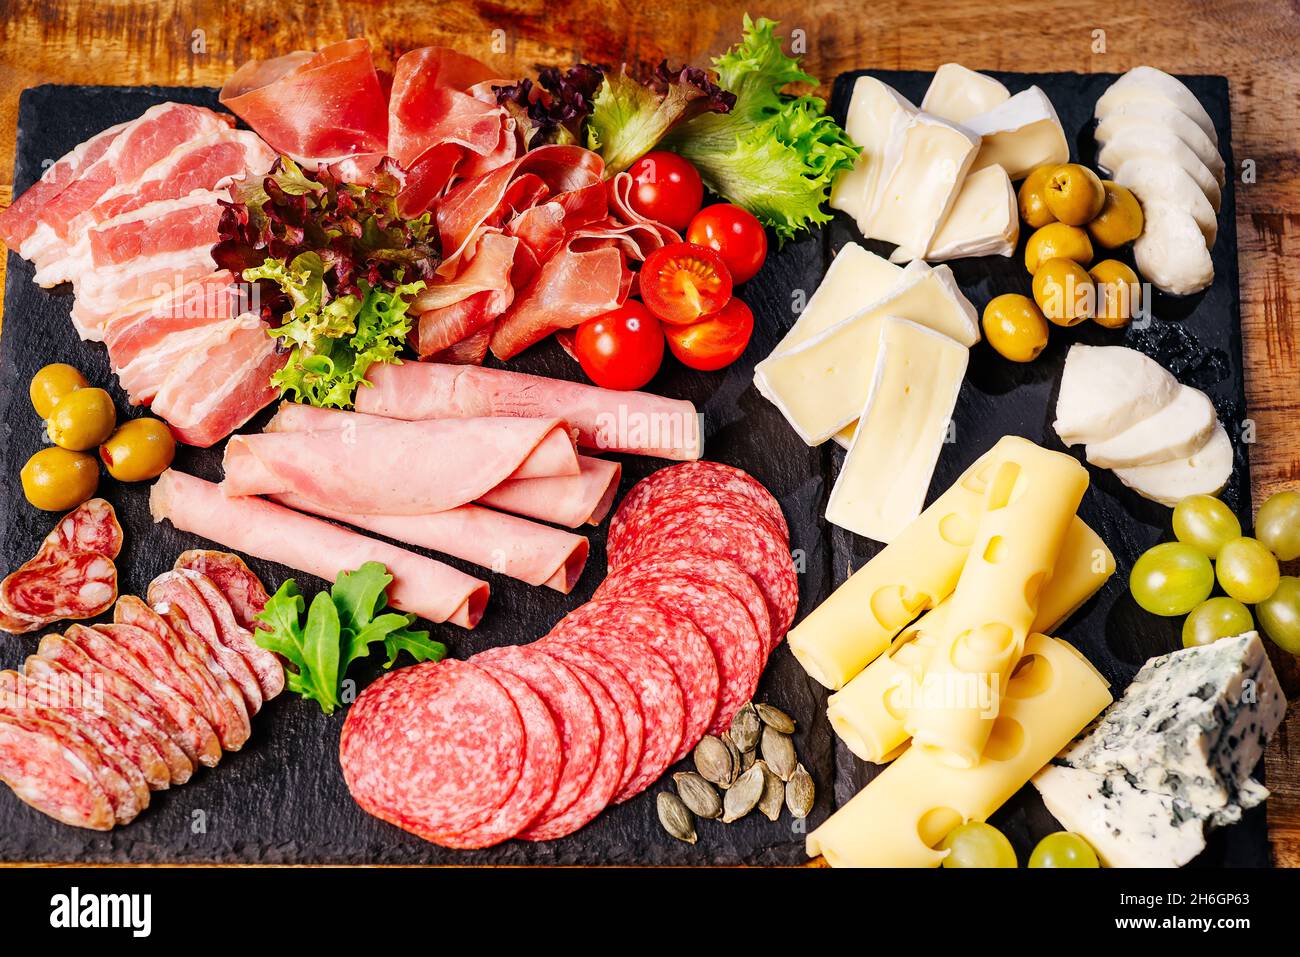 Assiette de charcuterie, antipasti avec assortiment de salami, fromage,  camembert et olives sur table en bois.divers types de viandes et saucisses  sur bois Photo Stock - Alamy